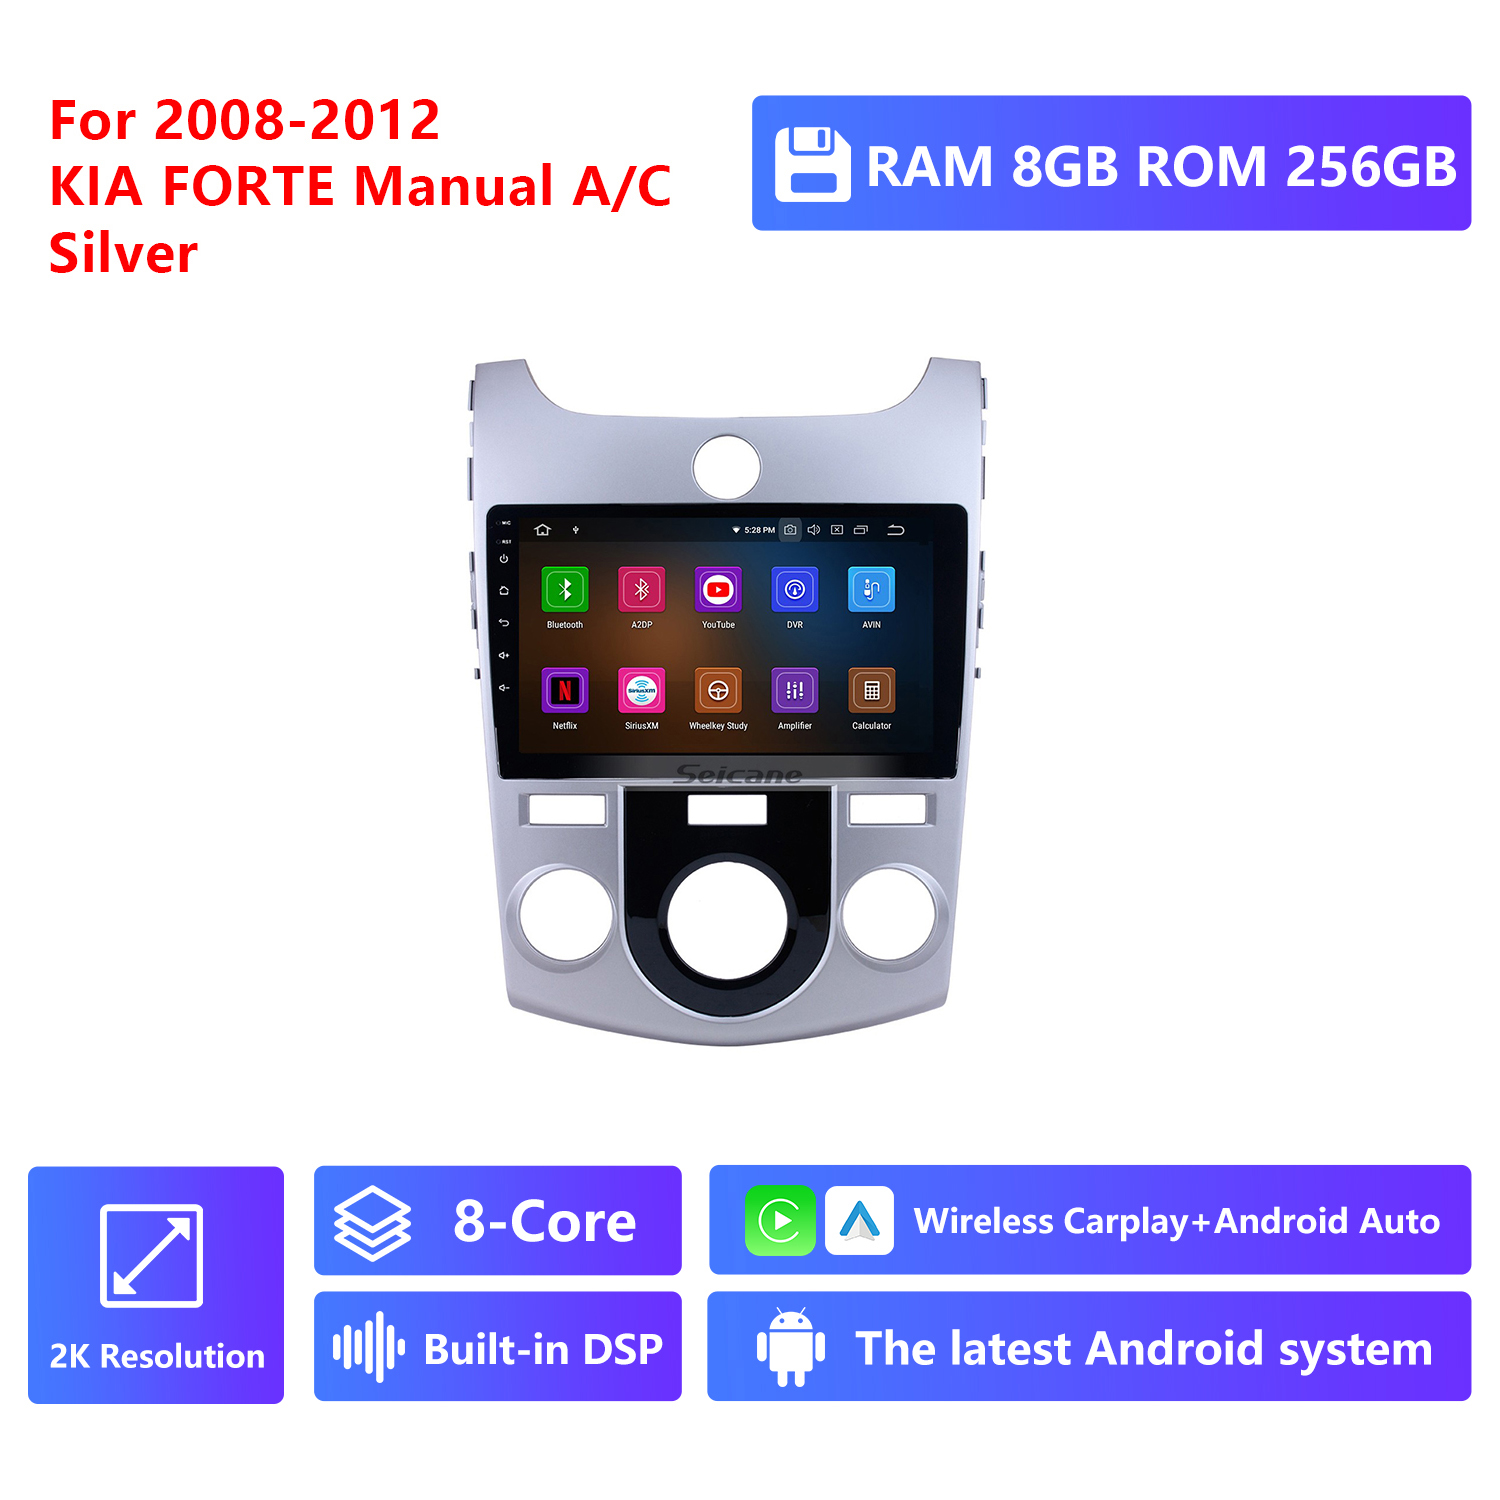 RAM 8G,ROM 256G 2K Resolution,Silver